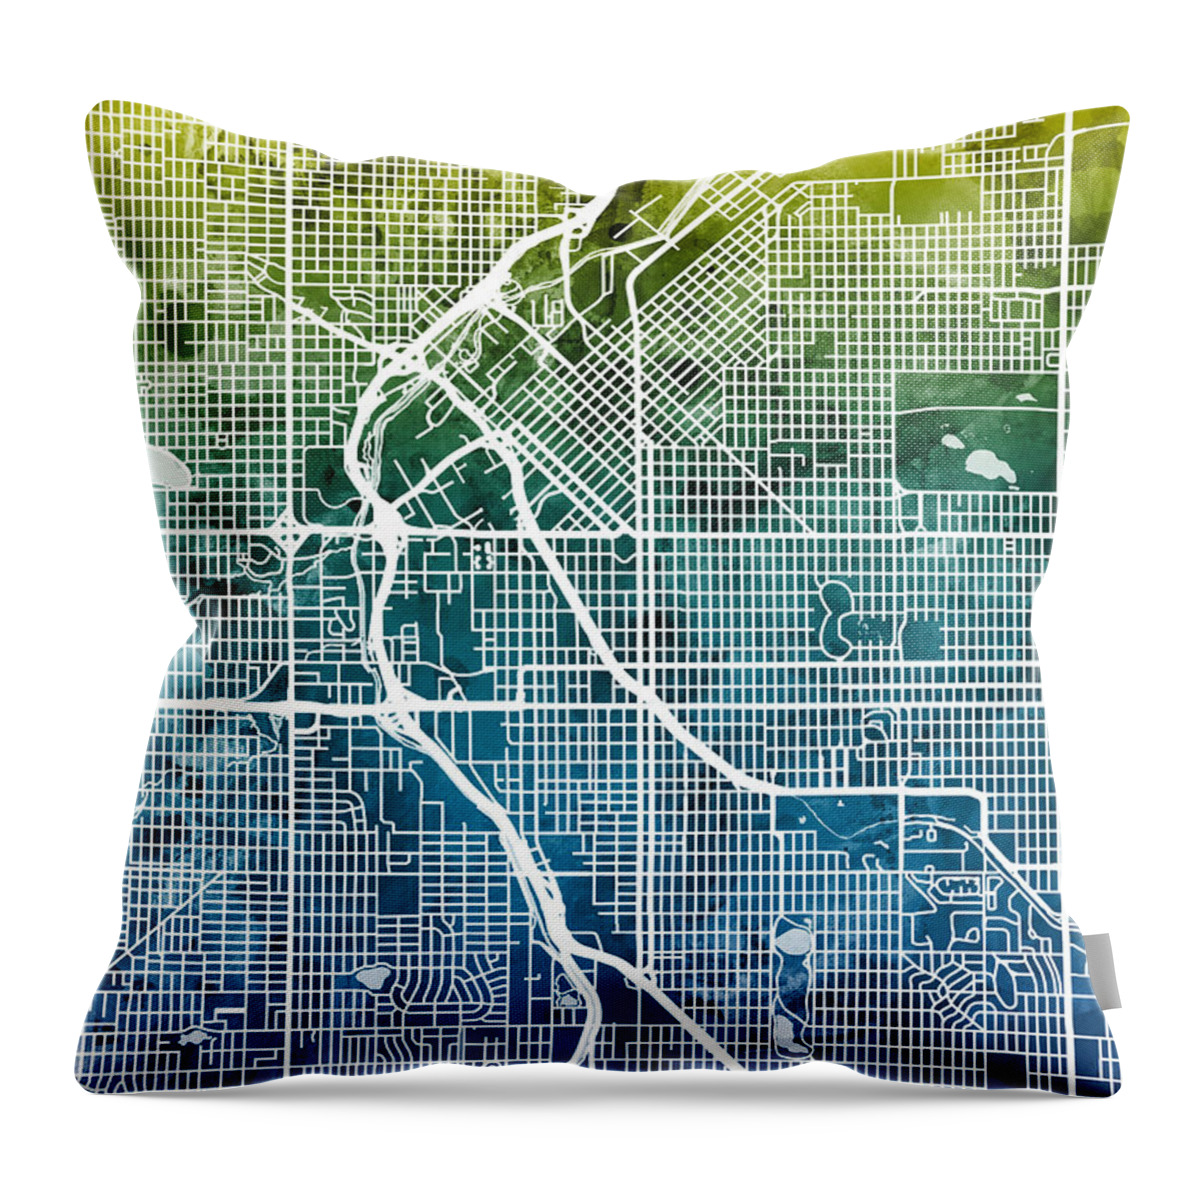 Street Map Throw Pillow featuring the digital art Denver Colorado Street Map #5 by Michael Tompsett